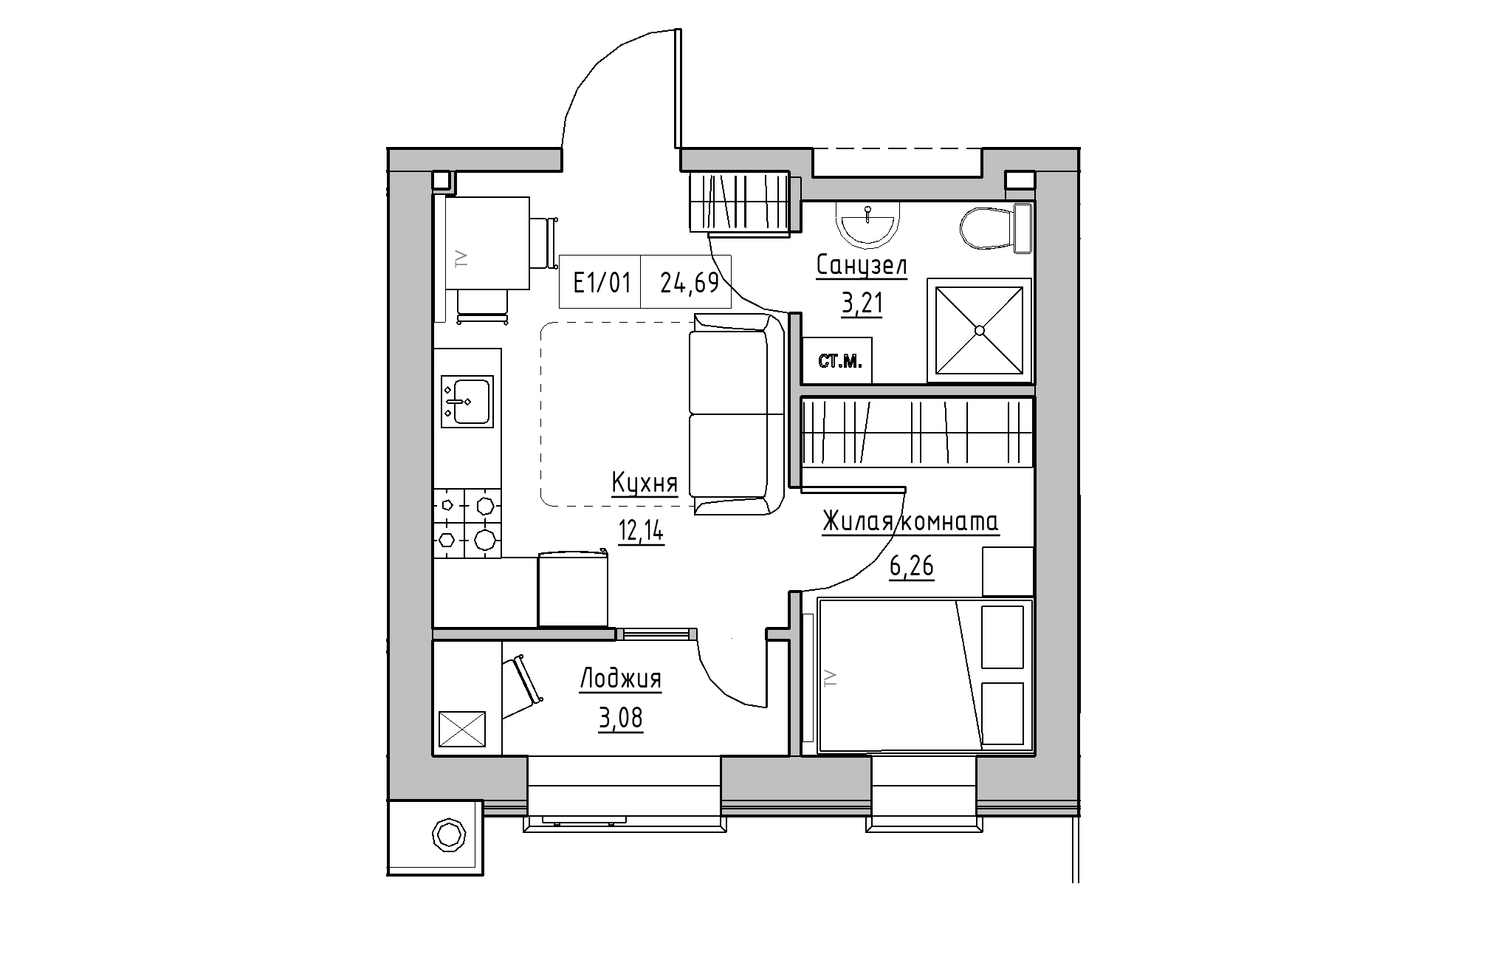 Планування 1-к квартира площею 24.69м2, KS-013-03/0012.